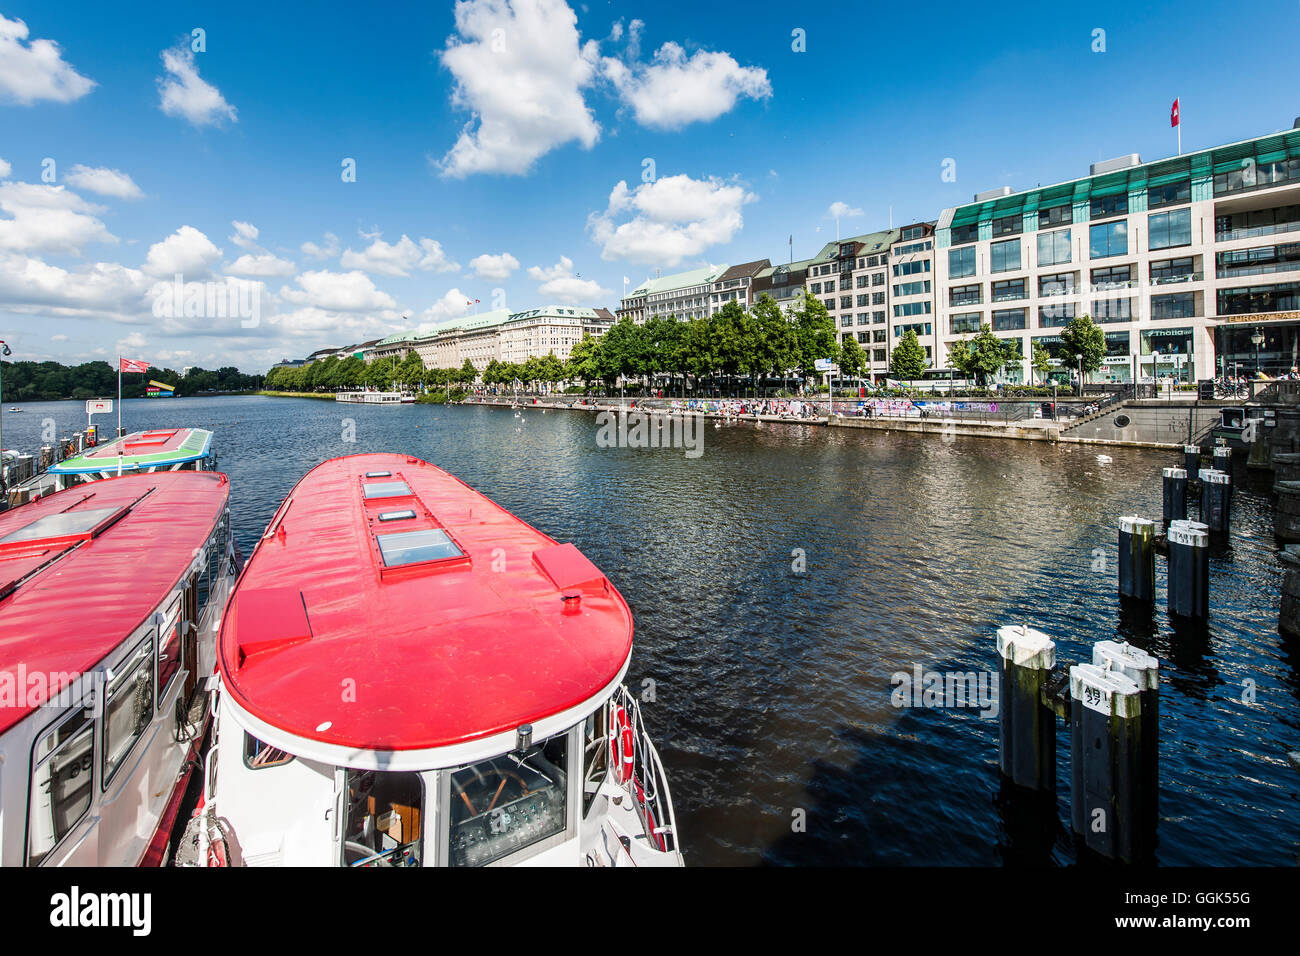 Ausflugsboote auf See Binnenalster, Terrasse Jungfernstieg, Hamburg, Deutschland Stockfoto